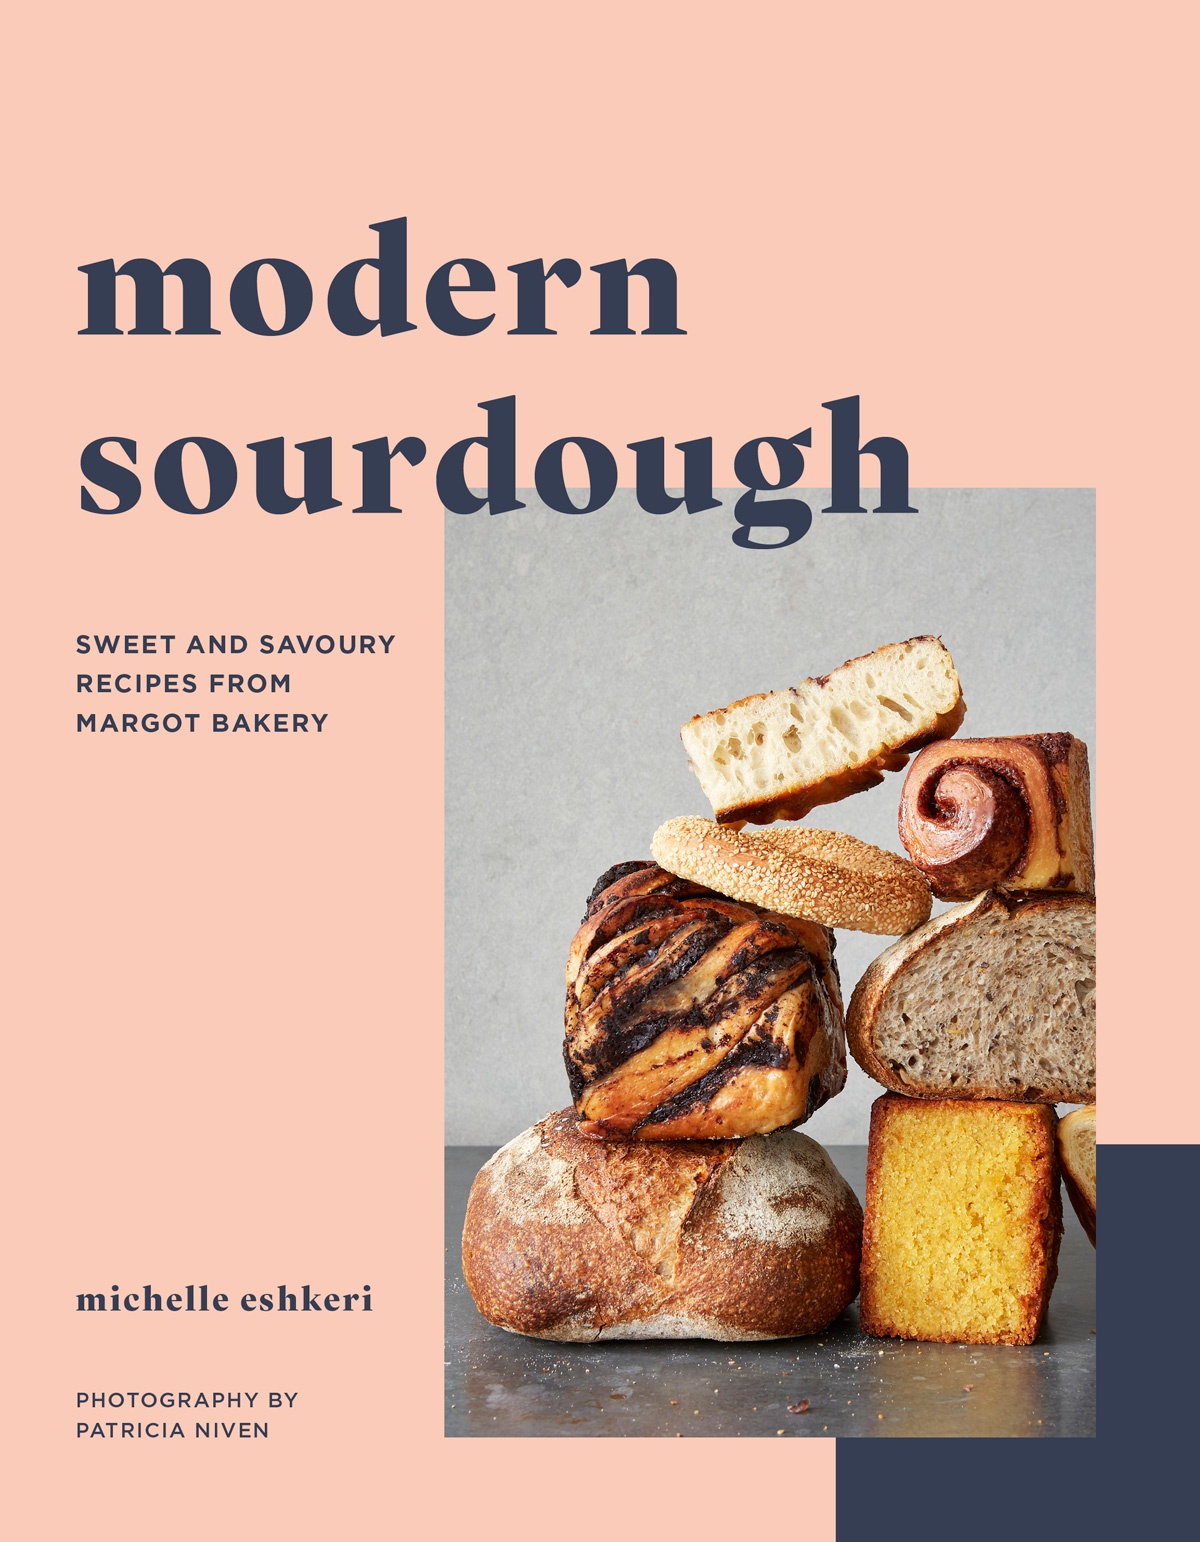 Book cover of Modern Sourdough by Michelle Eshkeri